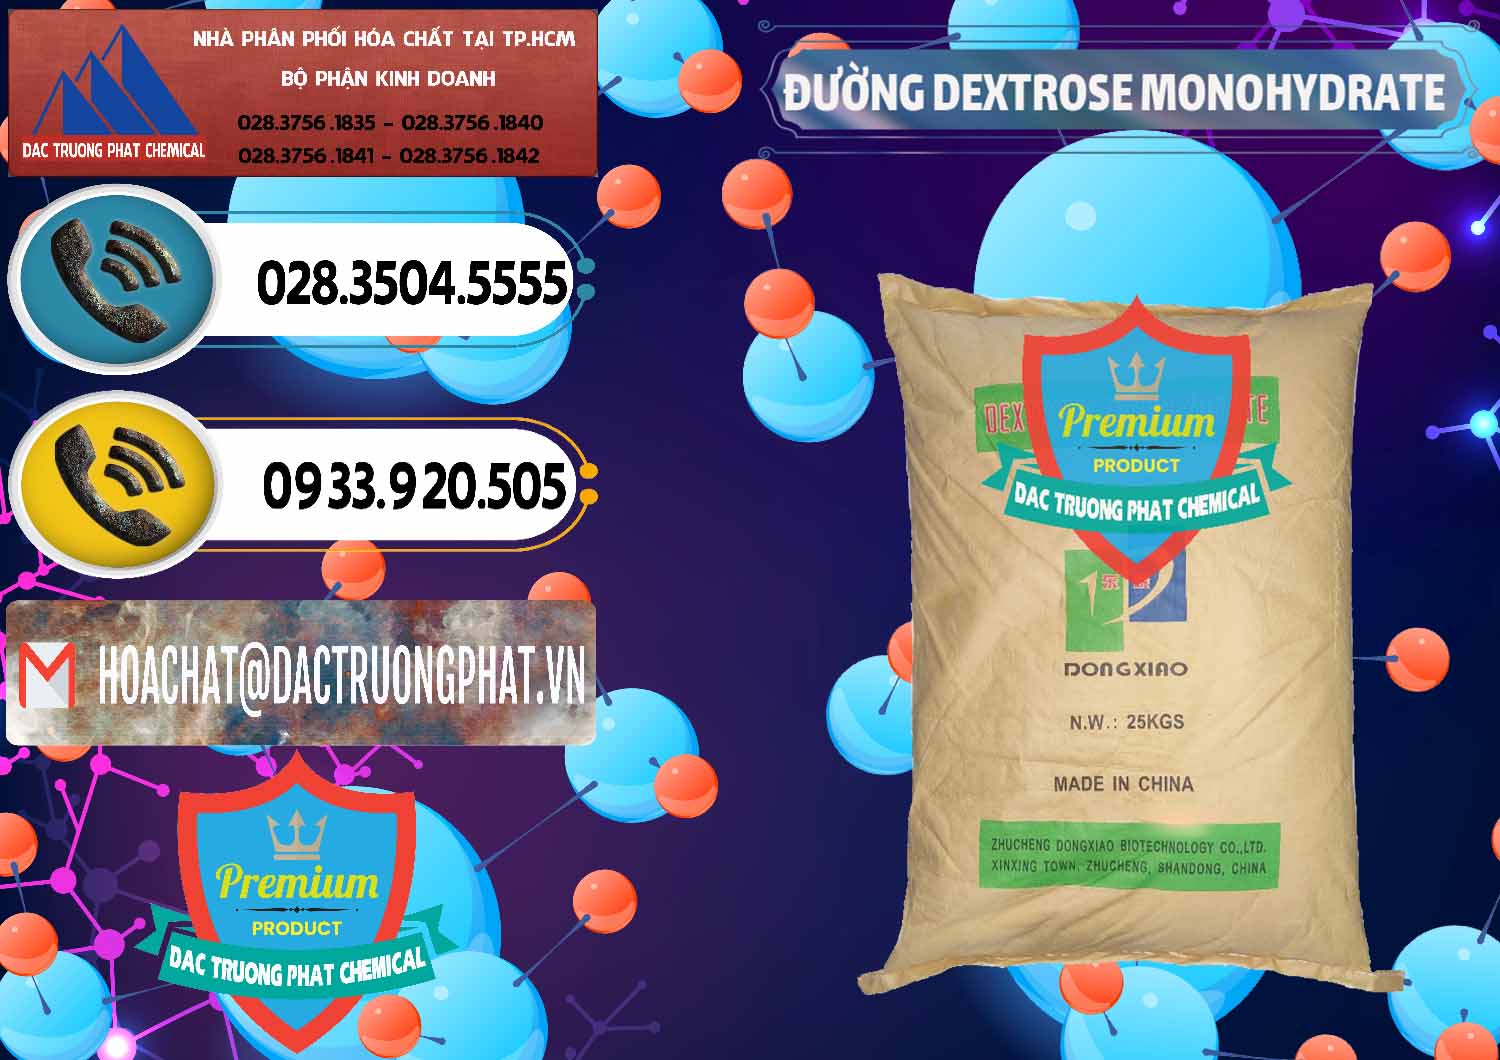 Nơi chuyên cung cấp và bán Đường Dextrose Monohydrate Food Grade Dongxiao Trung Quốc China - 0063 - Công ty nhập khẩu _ cung cấp hóa chất tại TP.HCM - hoachatdetnhuom.vn